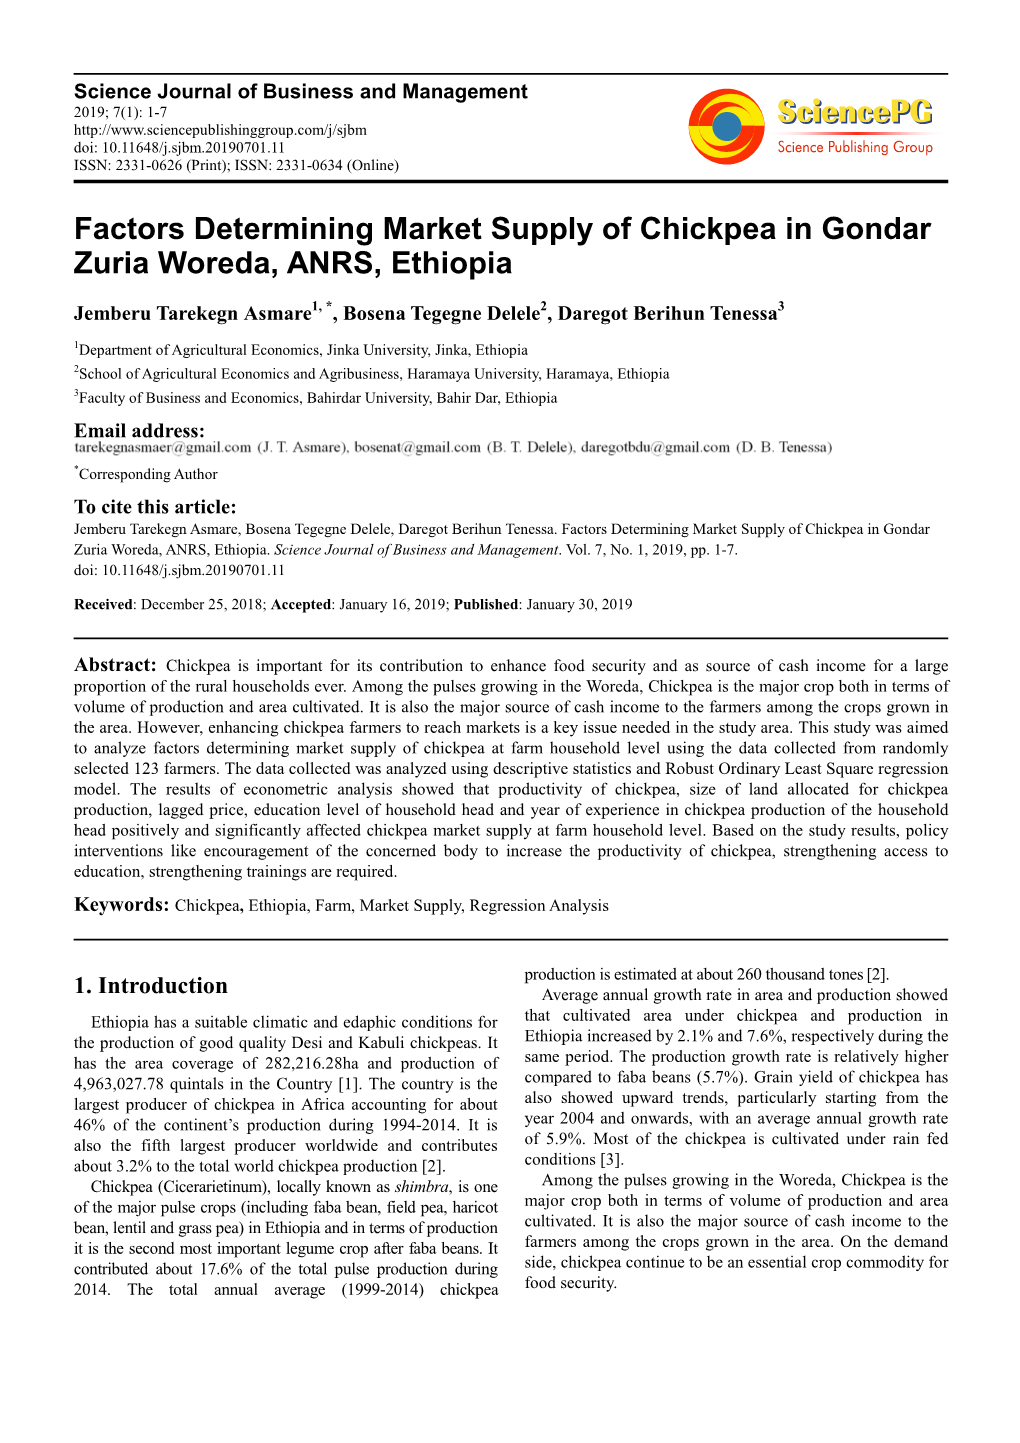 Factors Determining Market Supply of Chickpea in Gondar Zuria Woreda, ANRS, Ethiopia